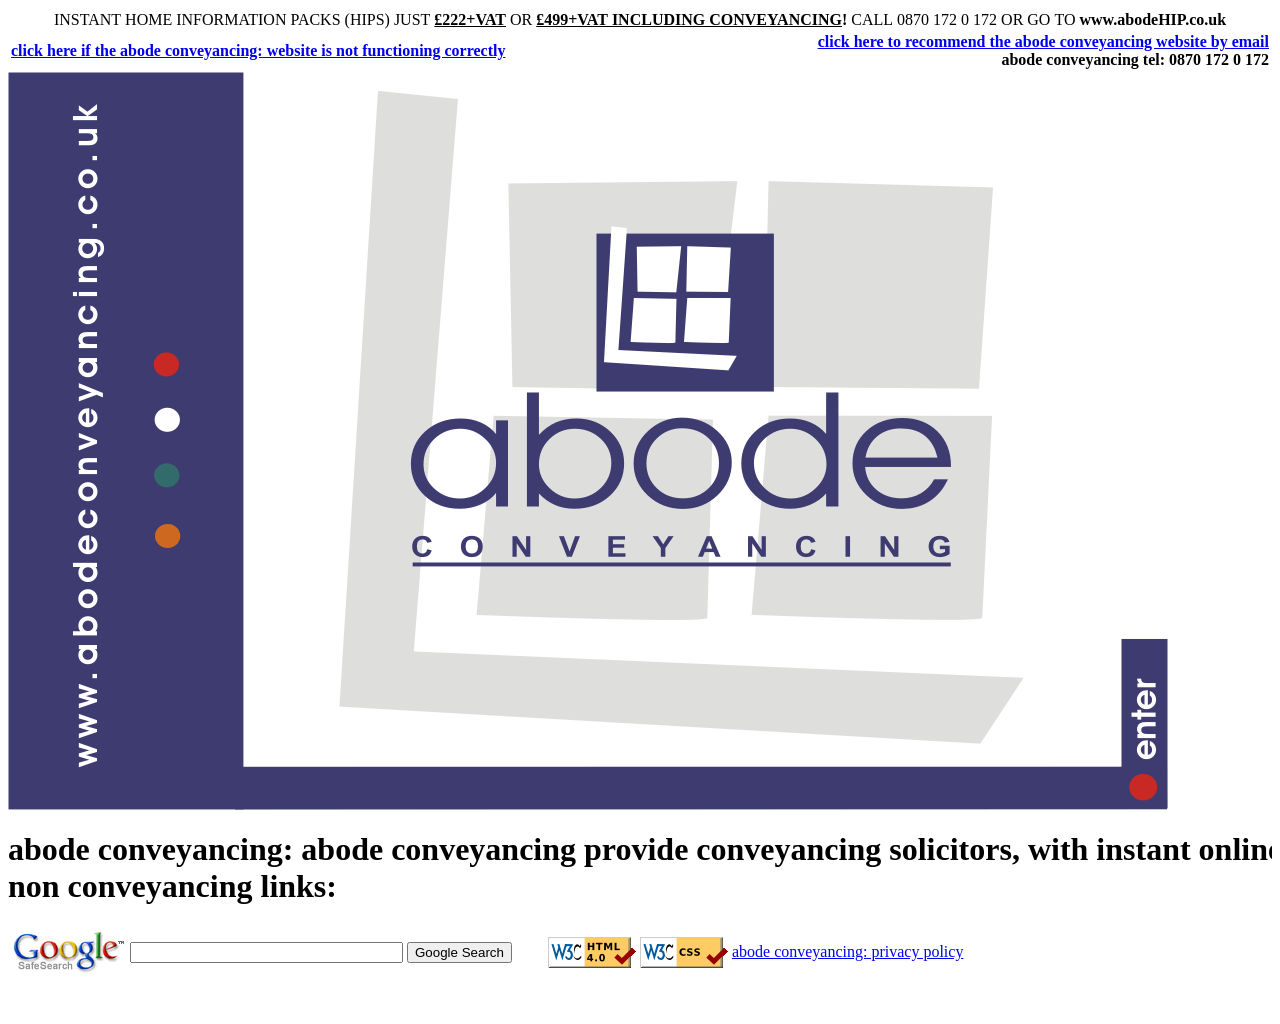 abodeconveyancing.co.uk